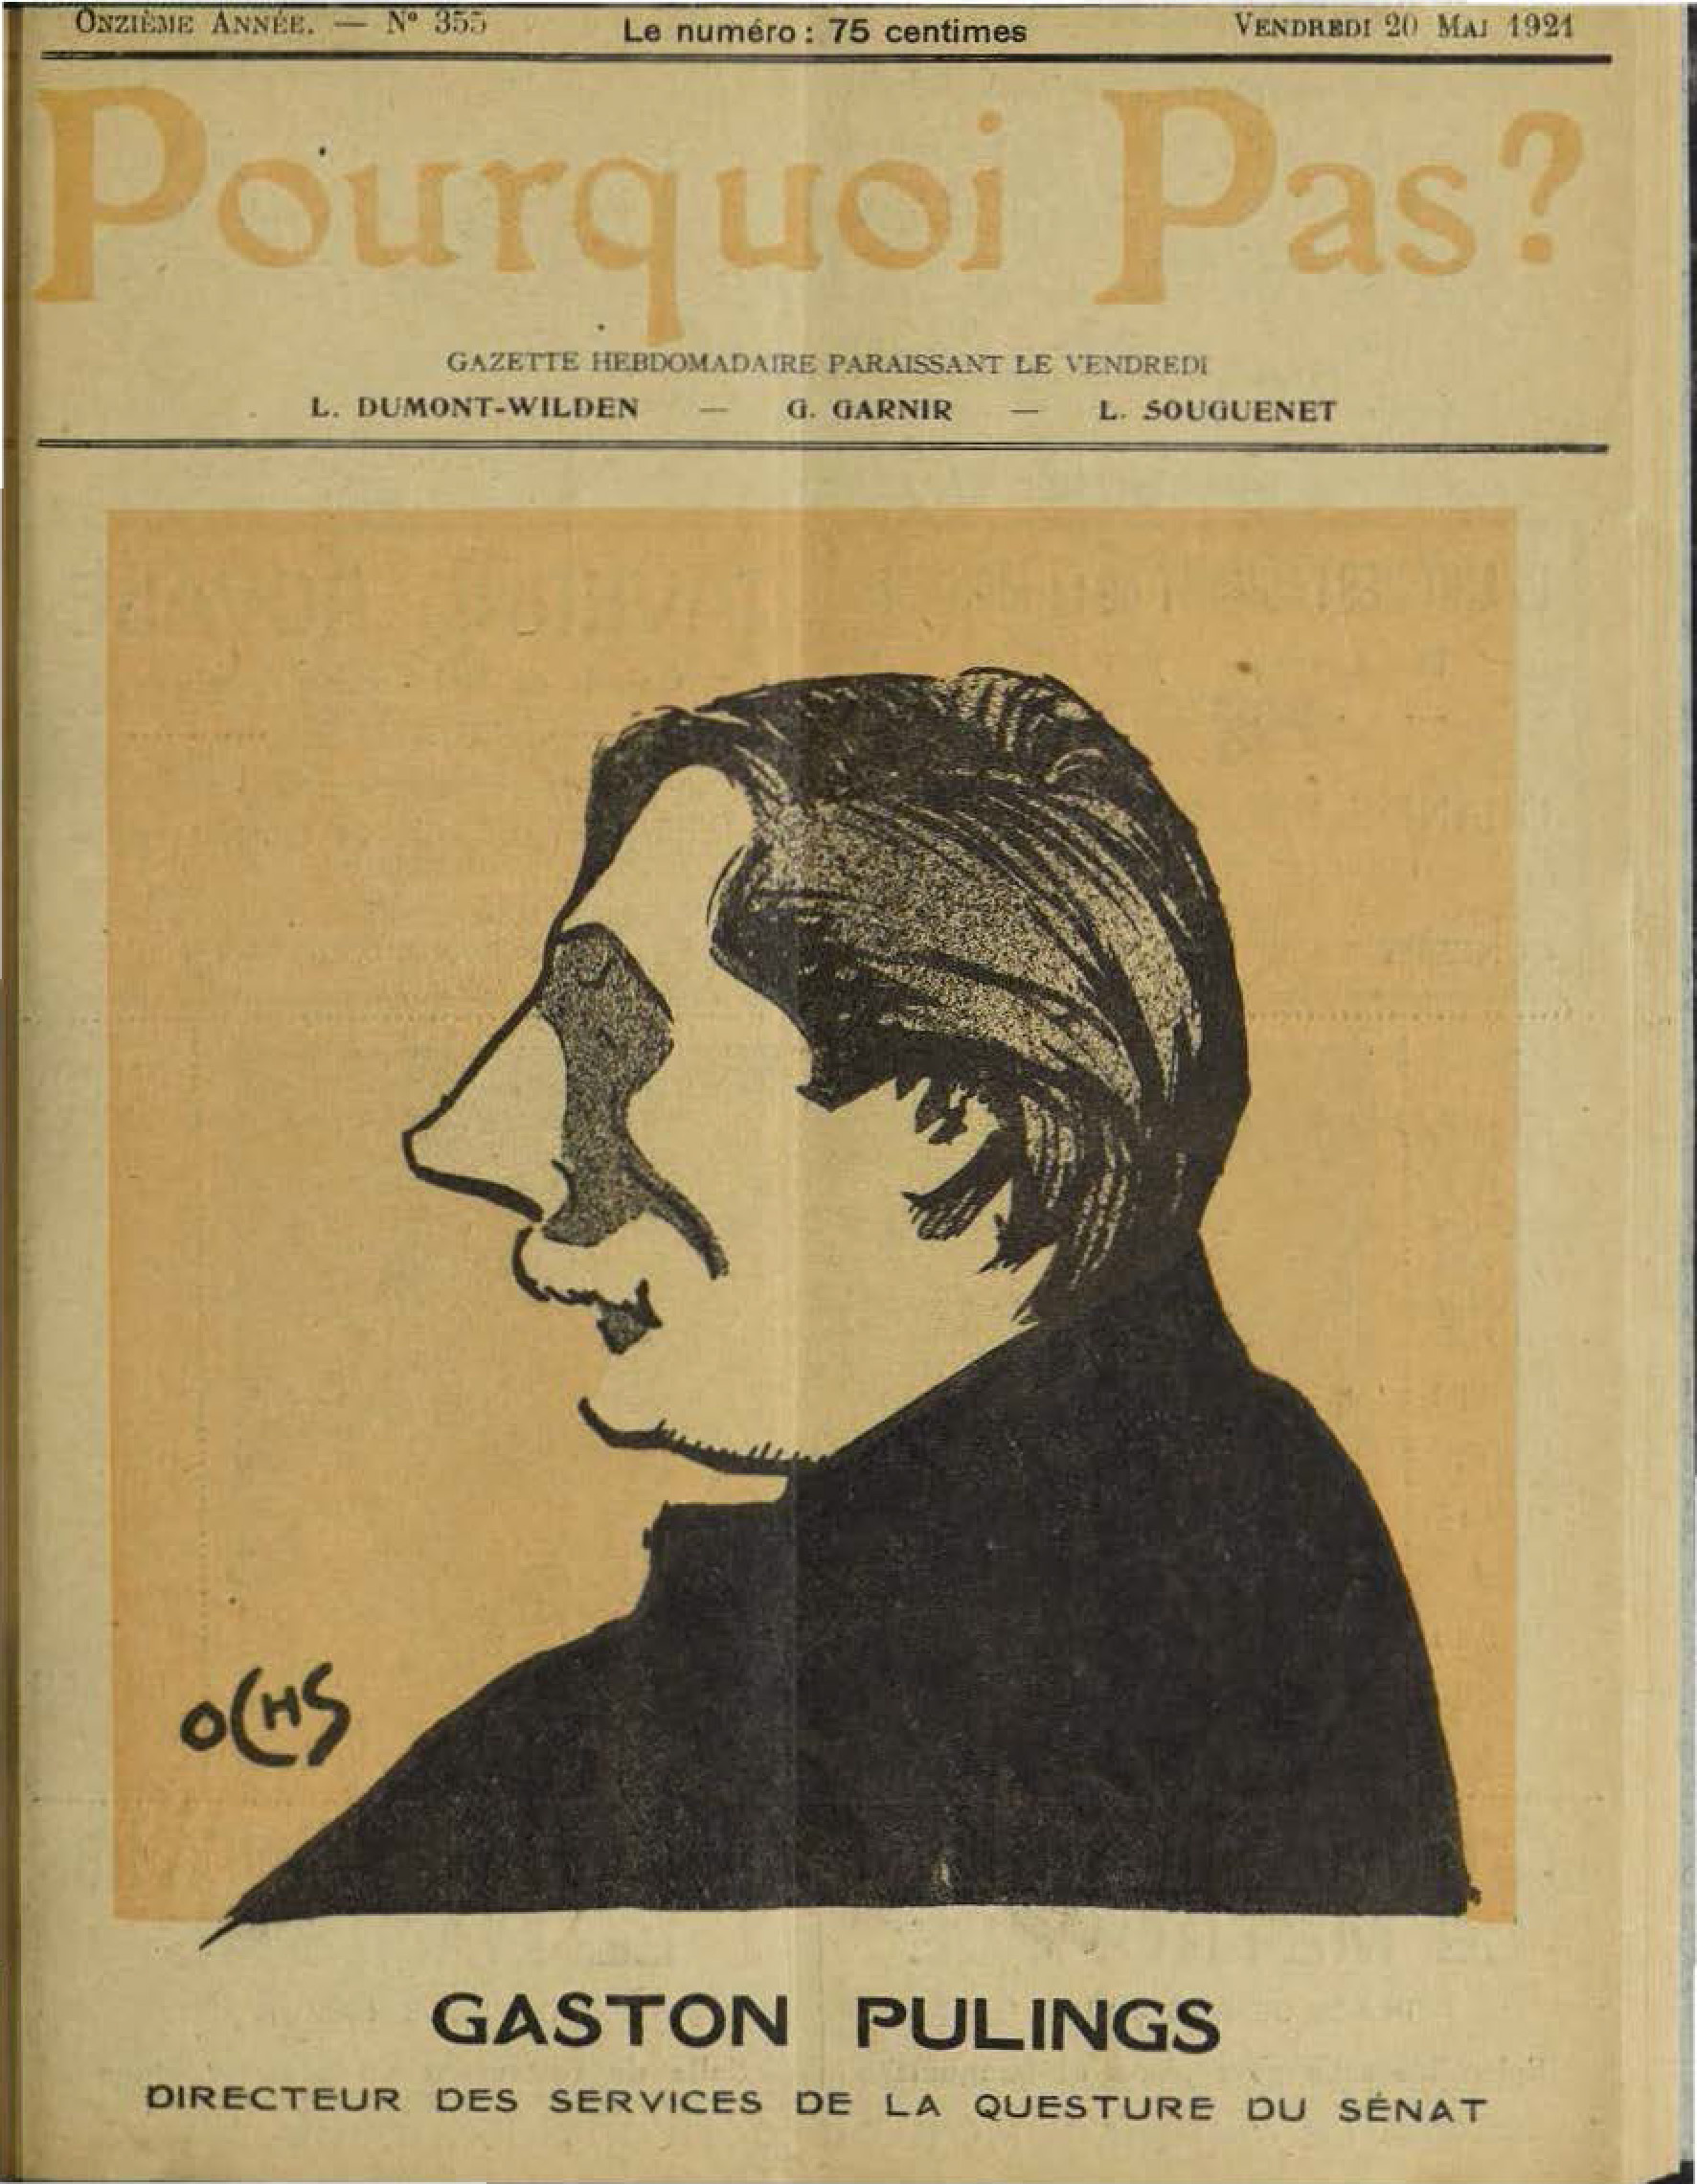 Profieltekening van Gaston Pulings, Directeur van de Quaestuurdiensten van de Senaat, door Jacques Ochs, op de cover van het magazine Pourquoi Pas? van 20 mei 1921